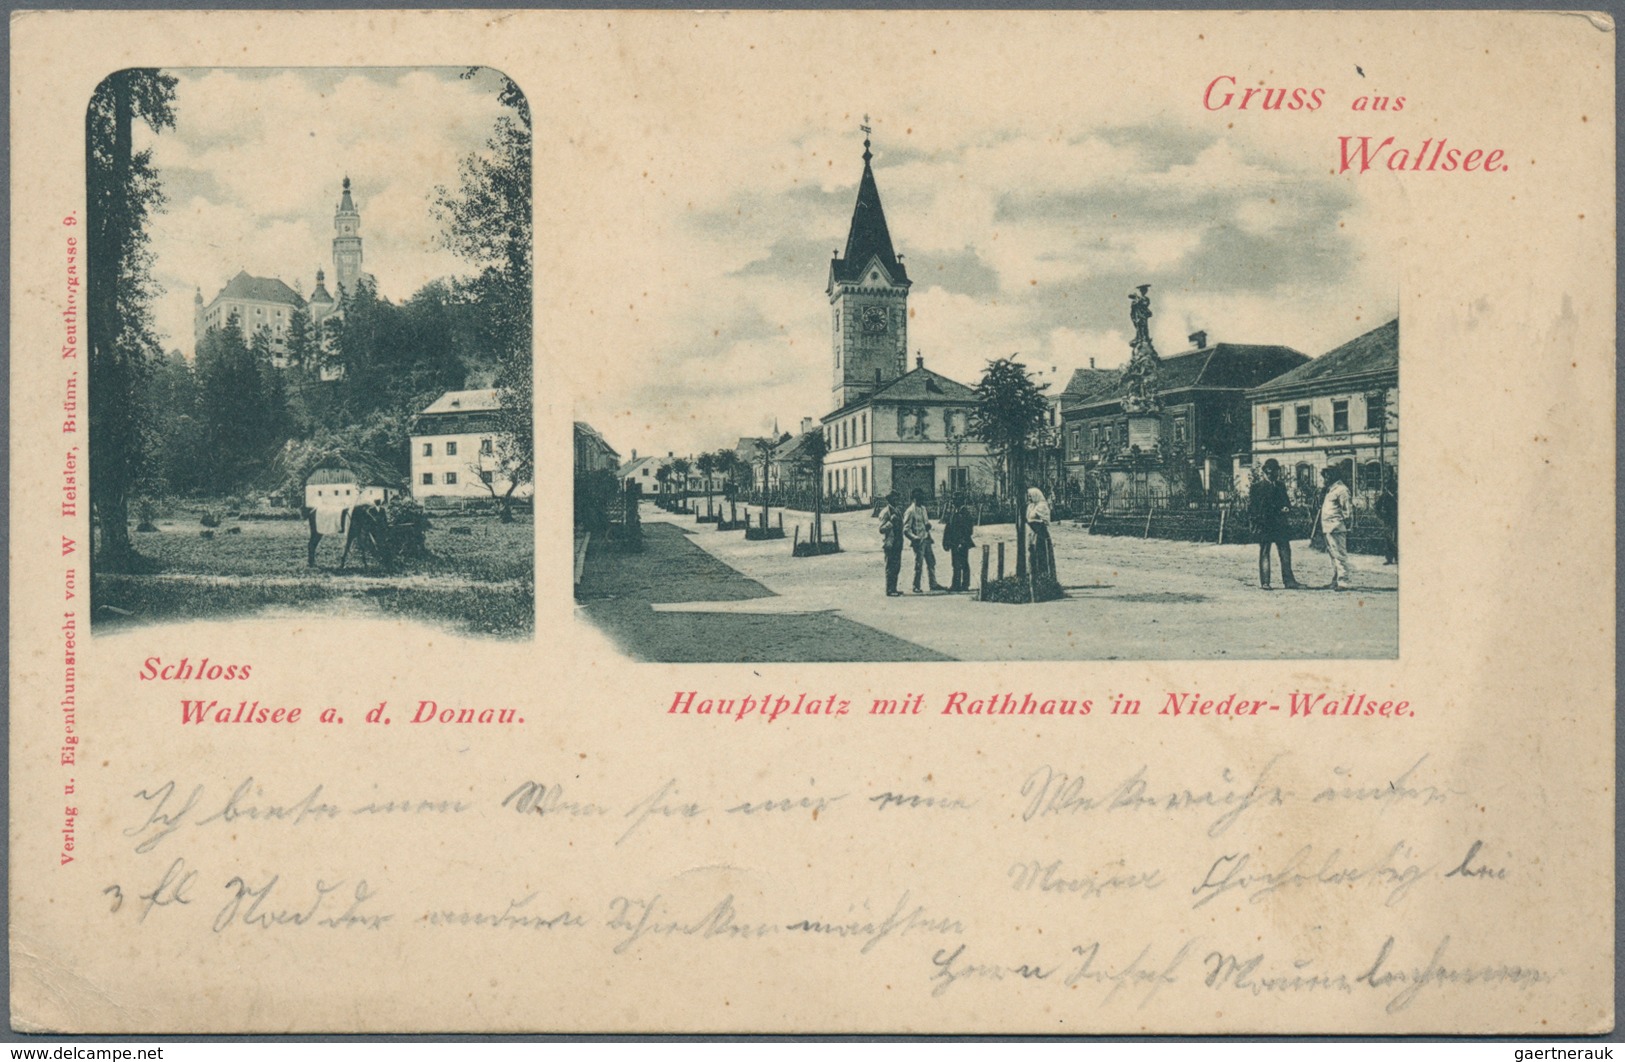 Ansichtskarten: KARTON, Mit Knapp über 1200 Historischen Ansichtskarten Ab Ca. 1900 Bis In Die 1970e - 500 Postkaarten Min.